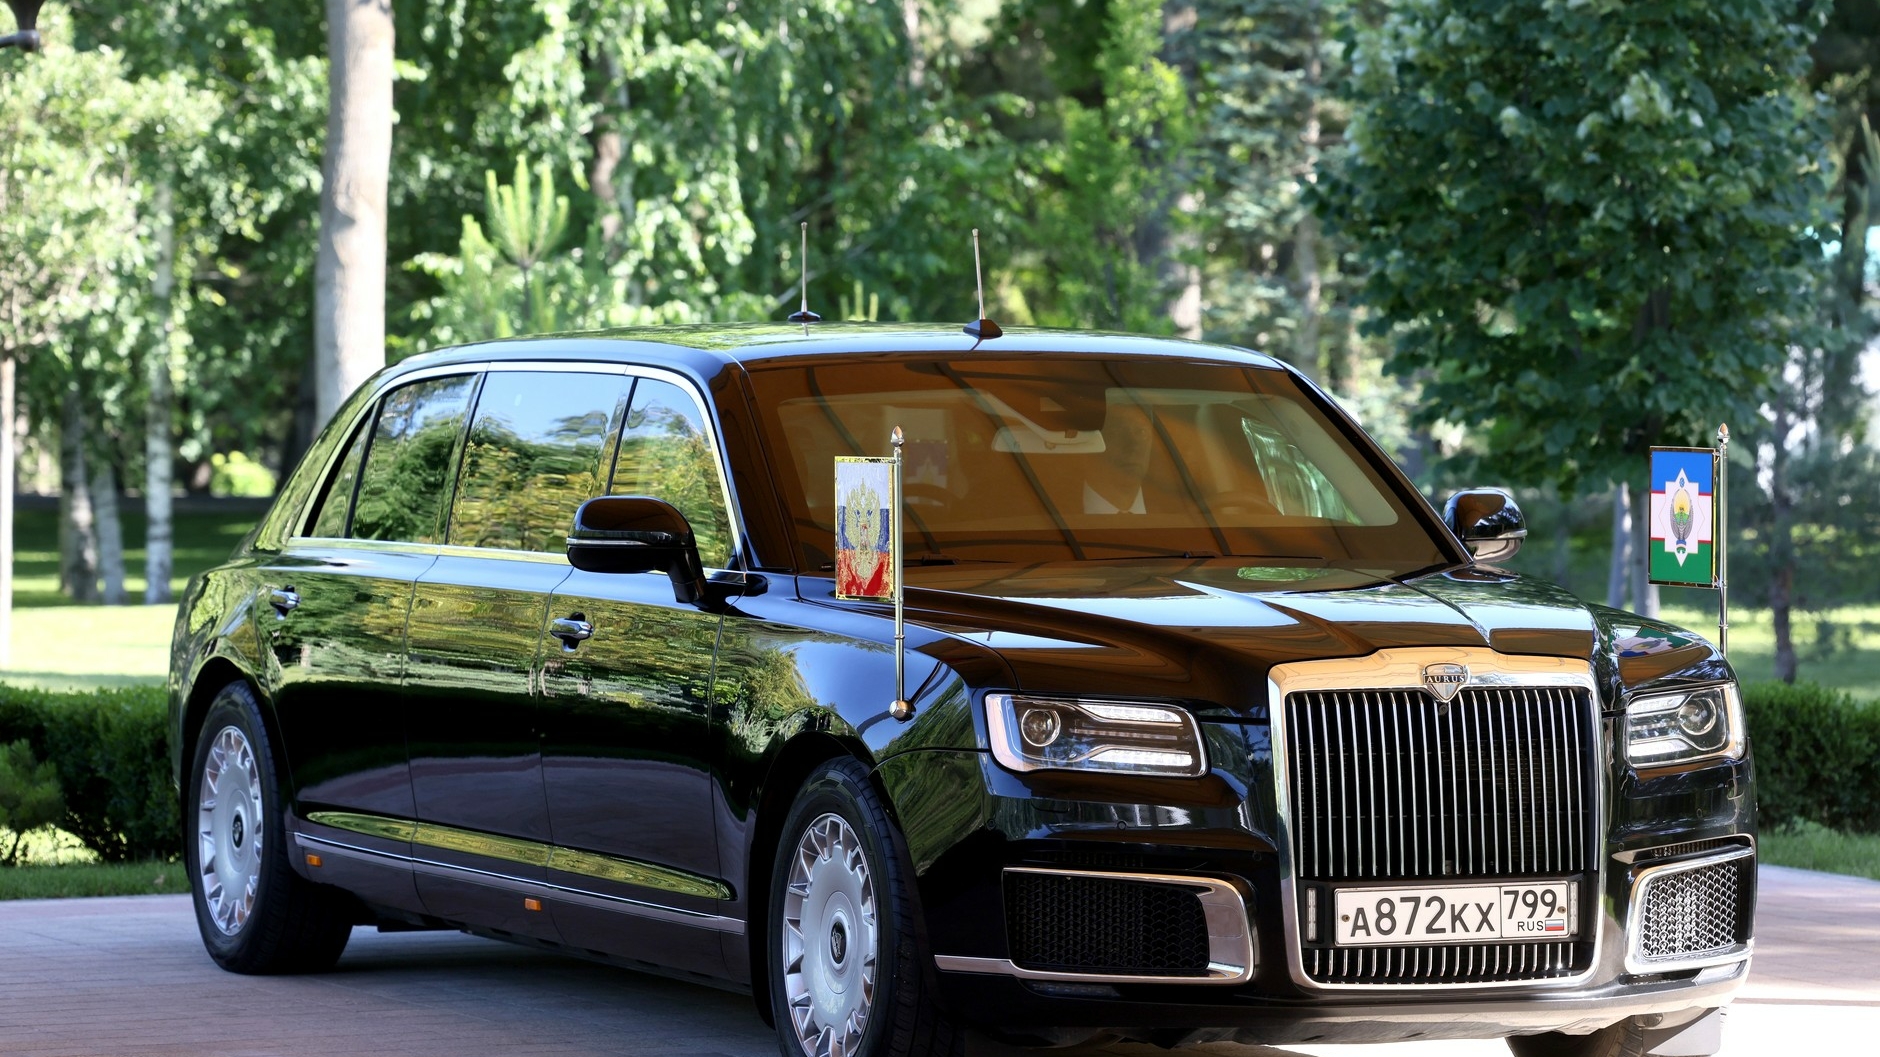 Смольный потратил 75 млн рублей на новую машину, чтобы удивлять своих гостей